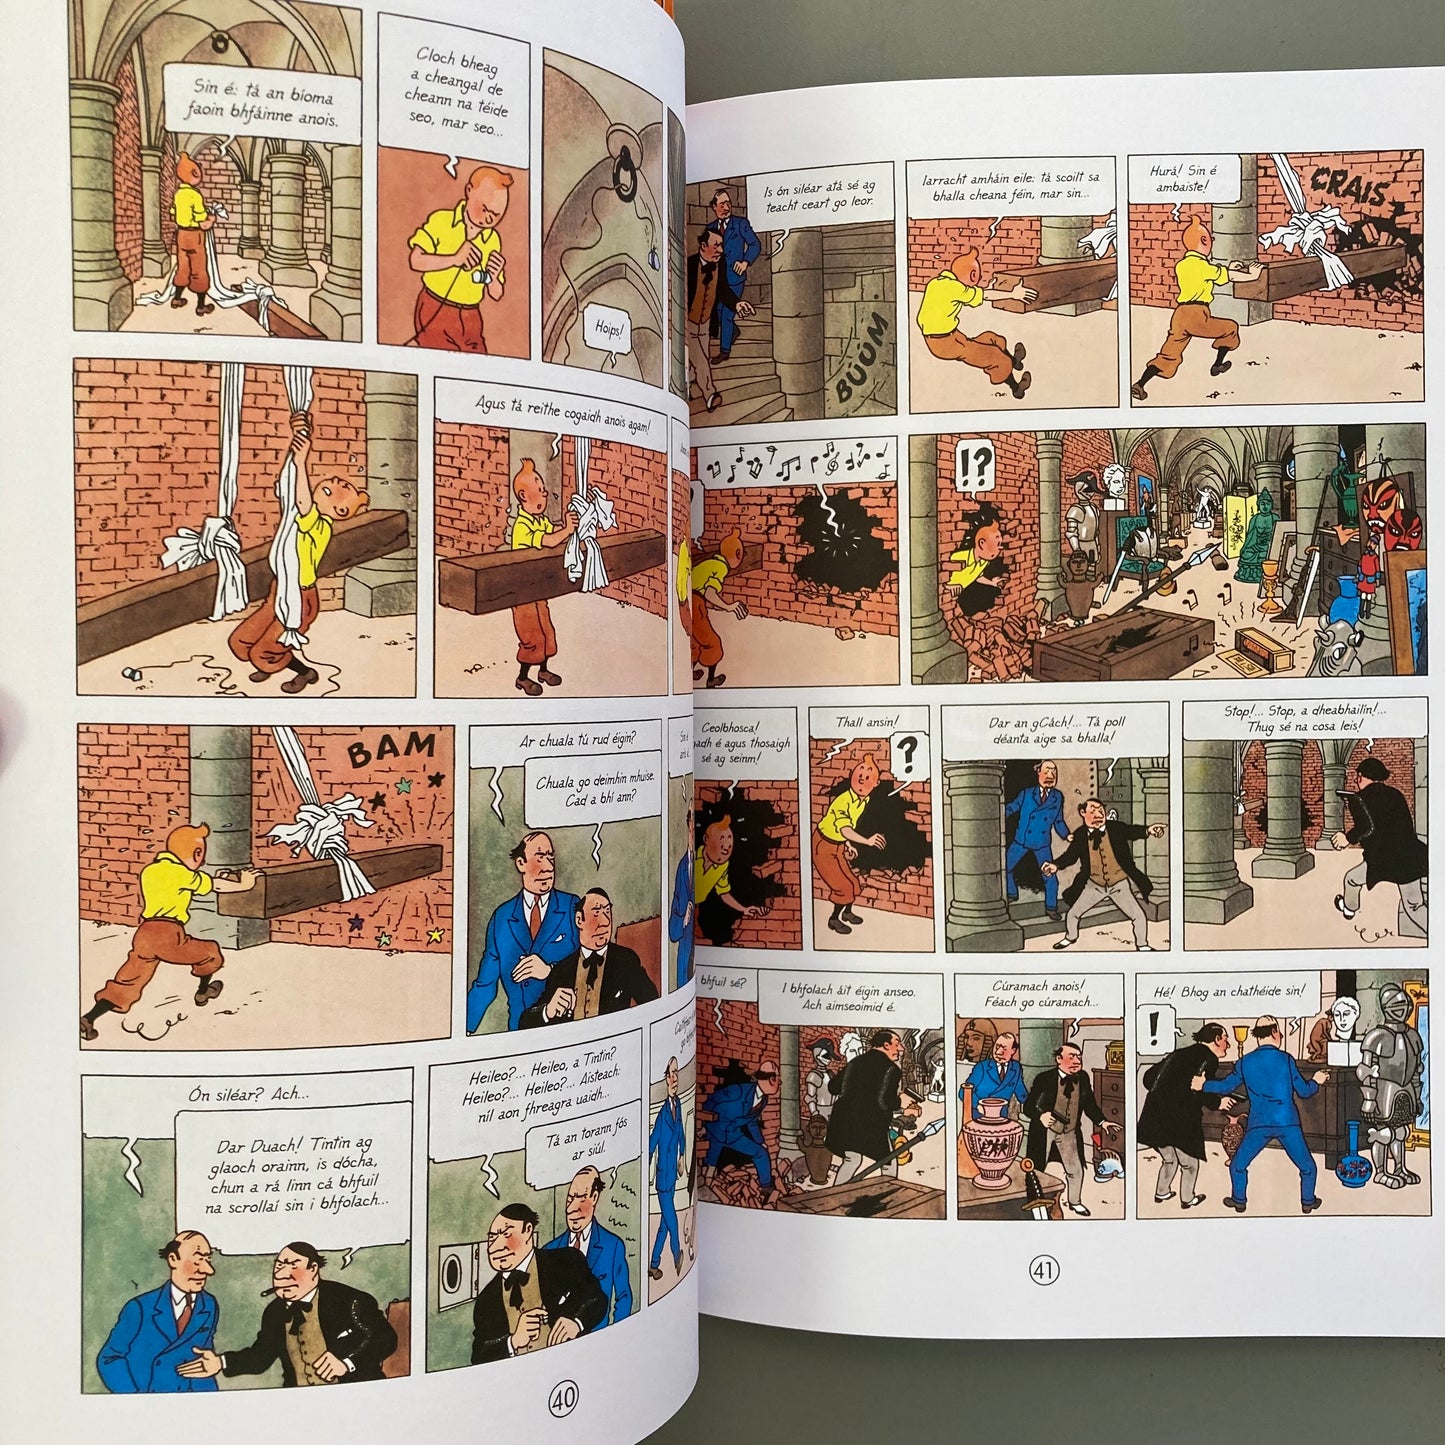 Eachtraí Tintin: An taonbheannach Mistéireach